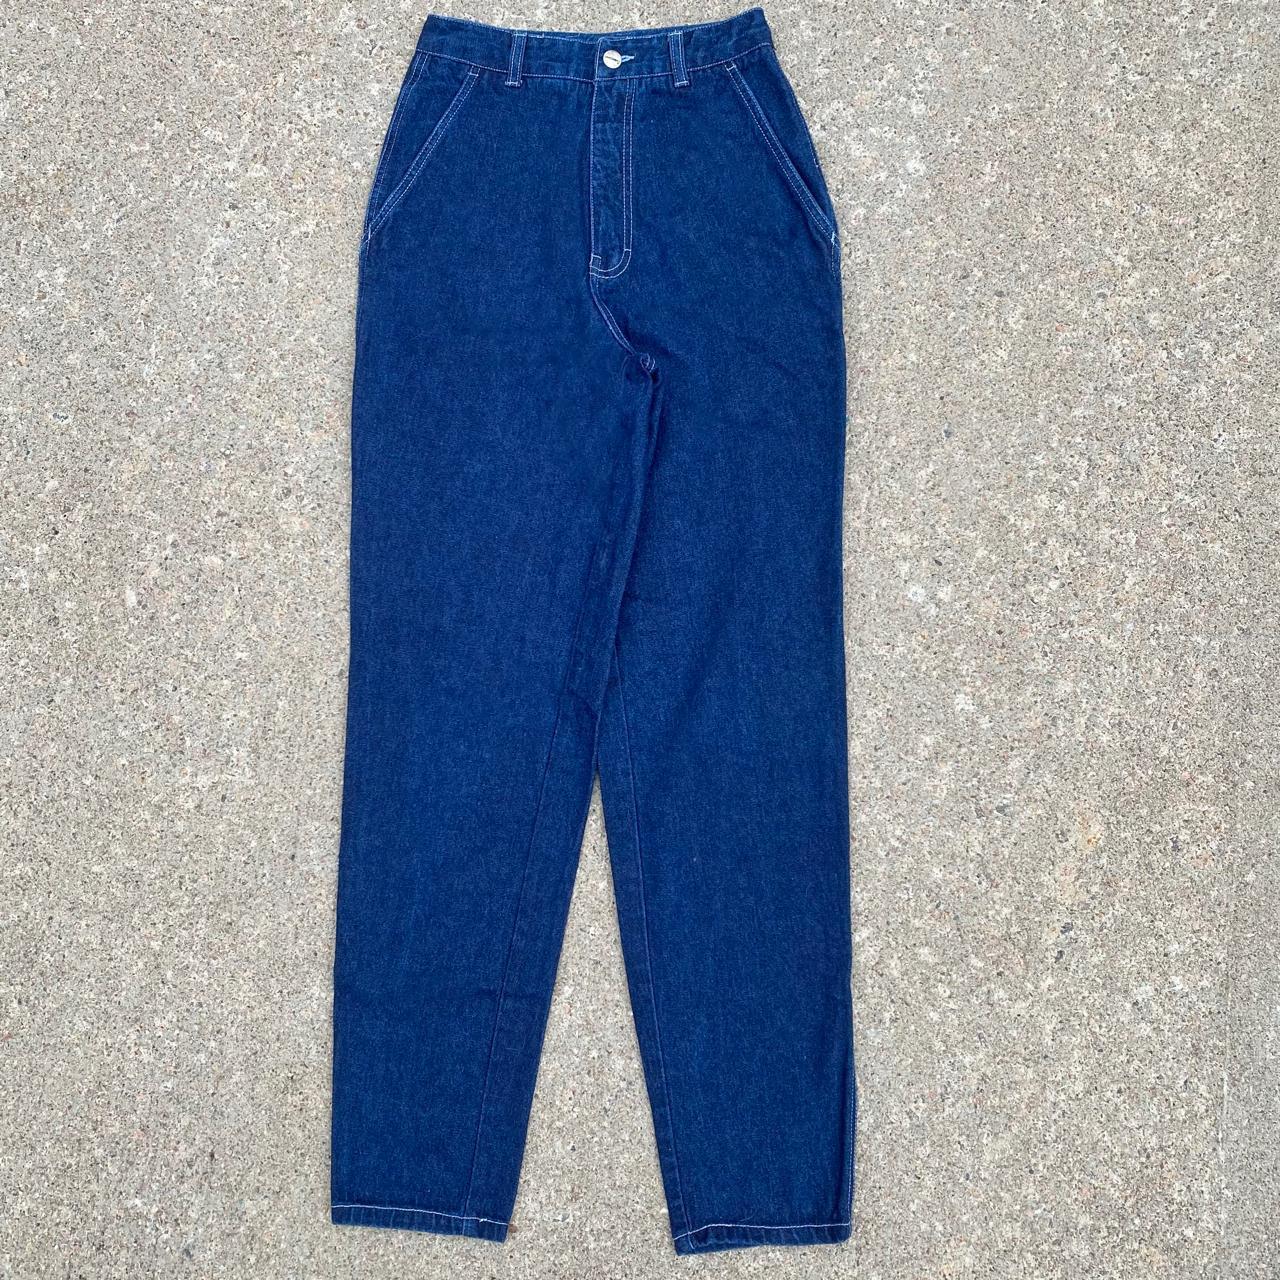 Union Bay Women's Blue Jeans (2)